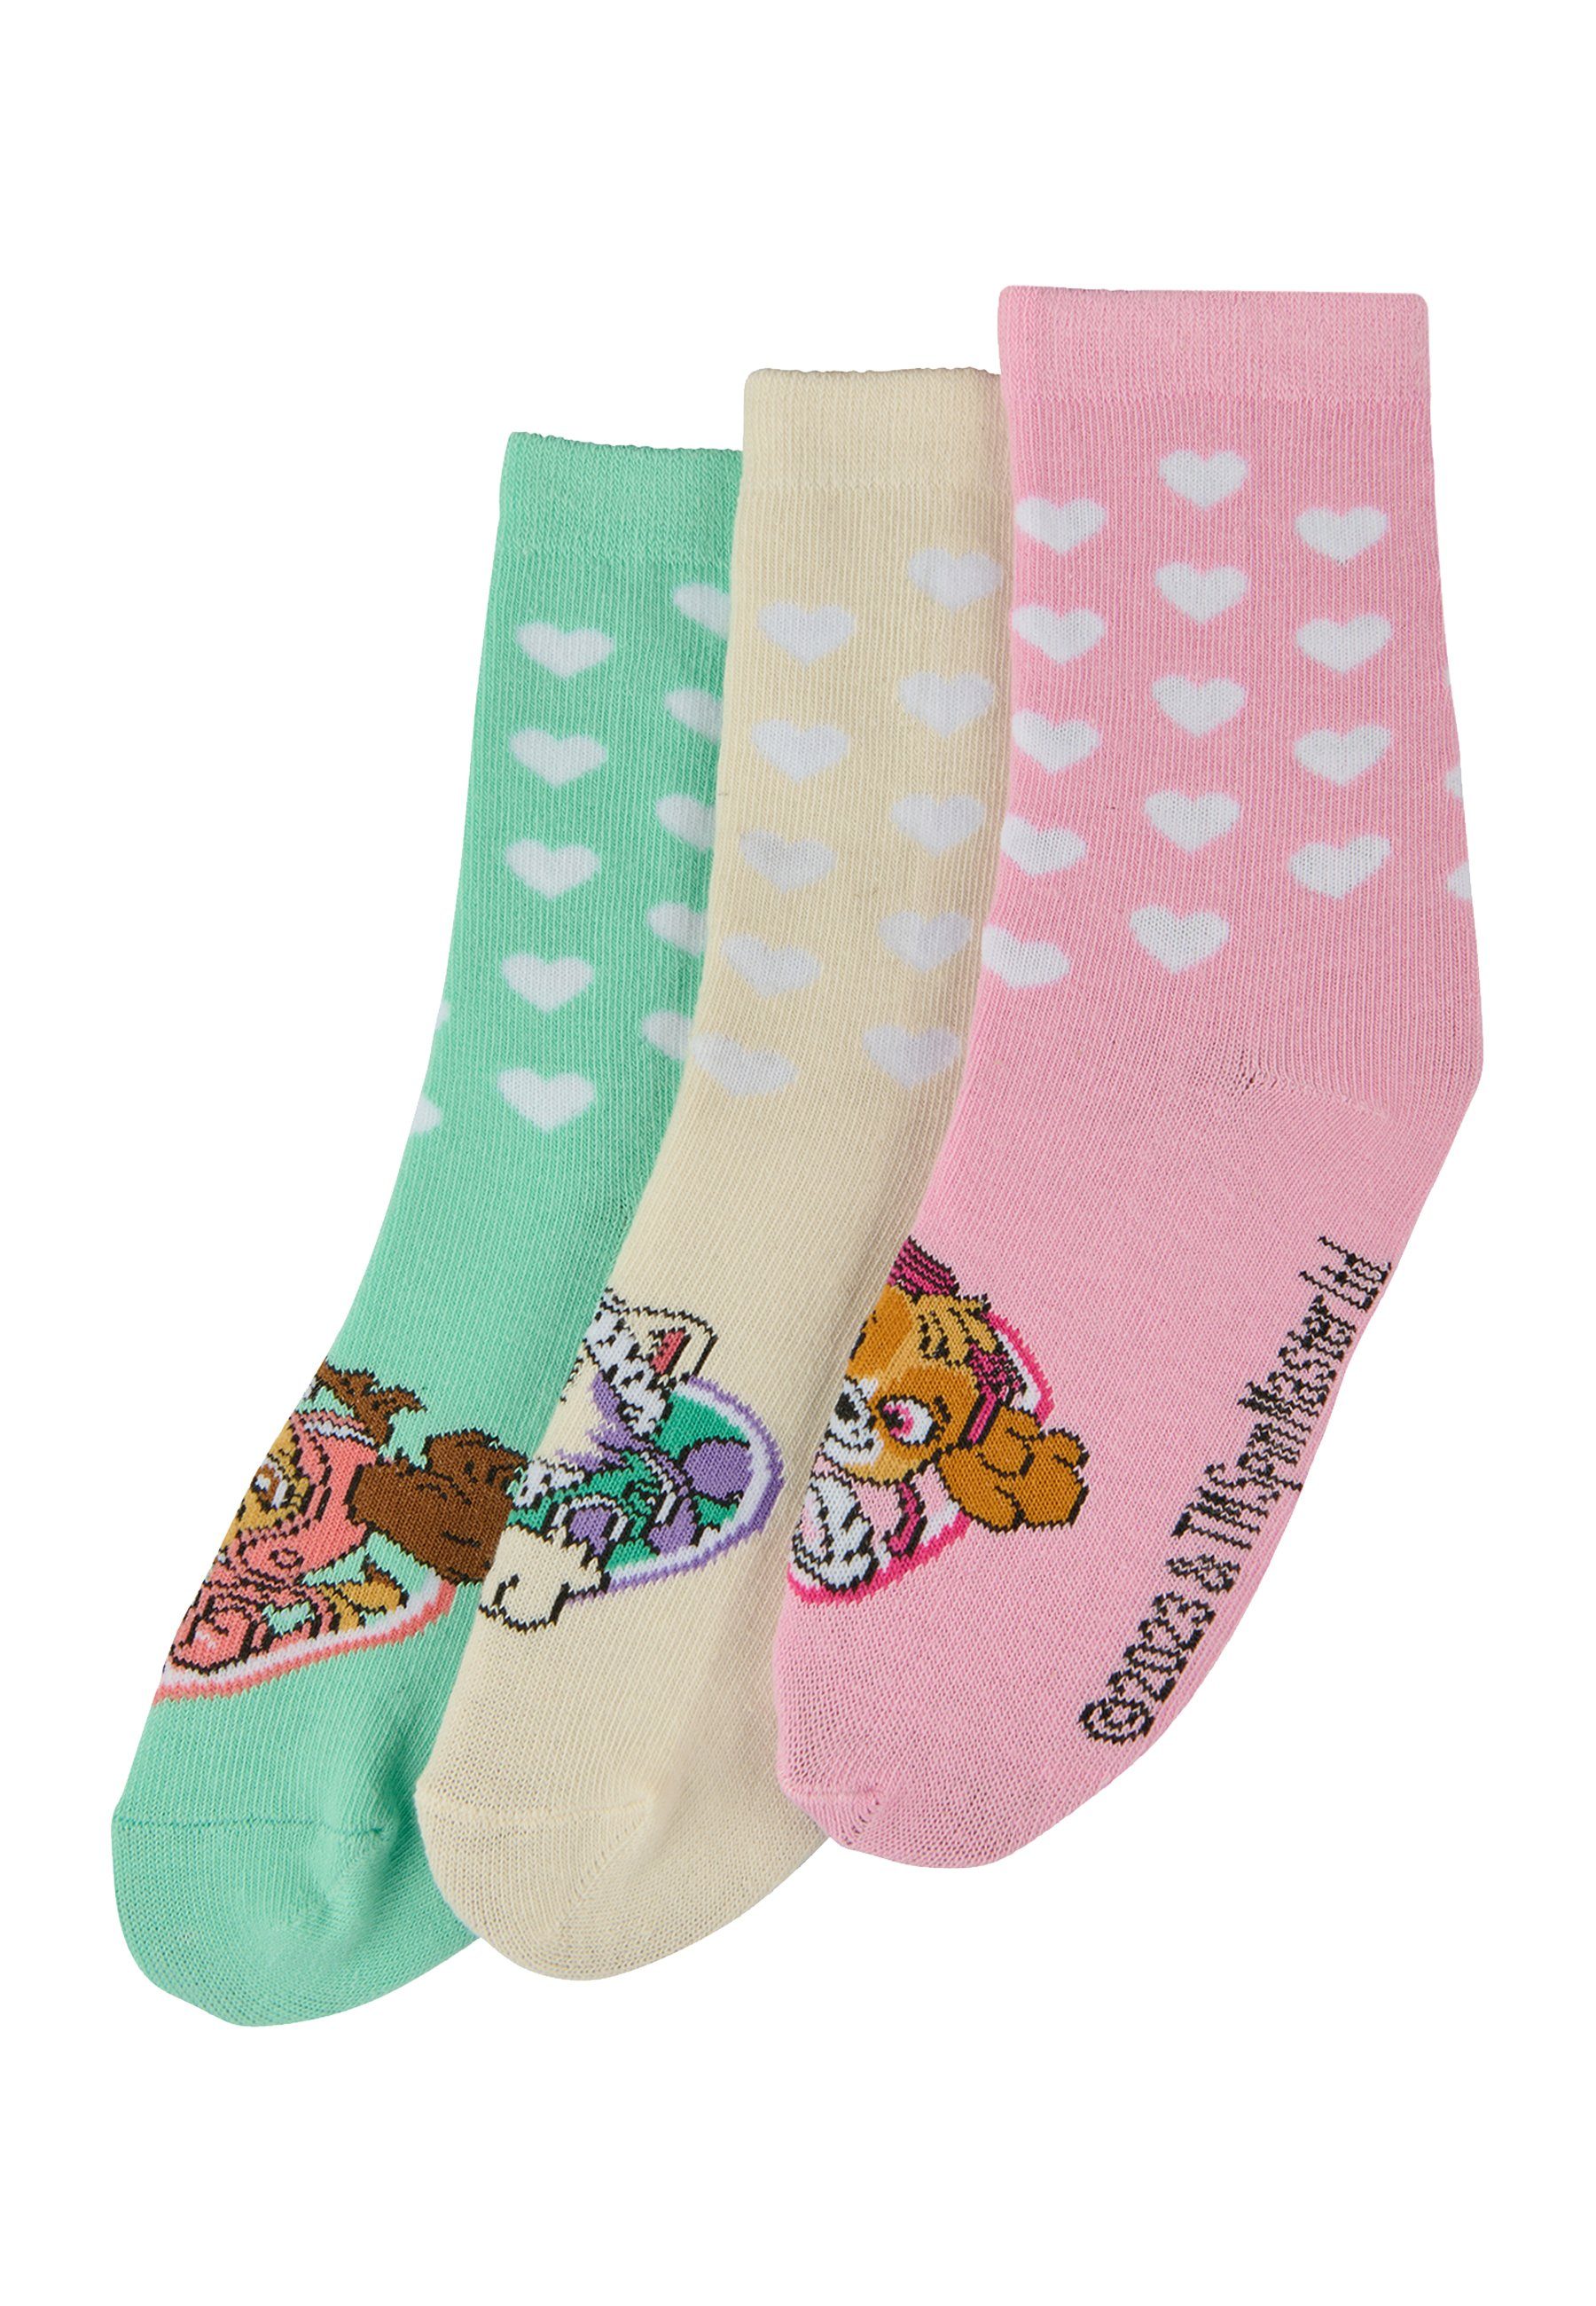 ONOMATO! Socken Paw Patrol Skye Everest Kinder Mädchen Socken 3er Pack (3-Paar)